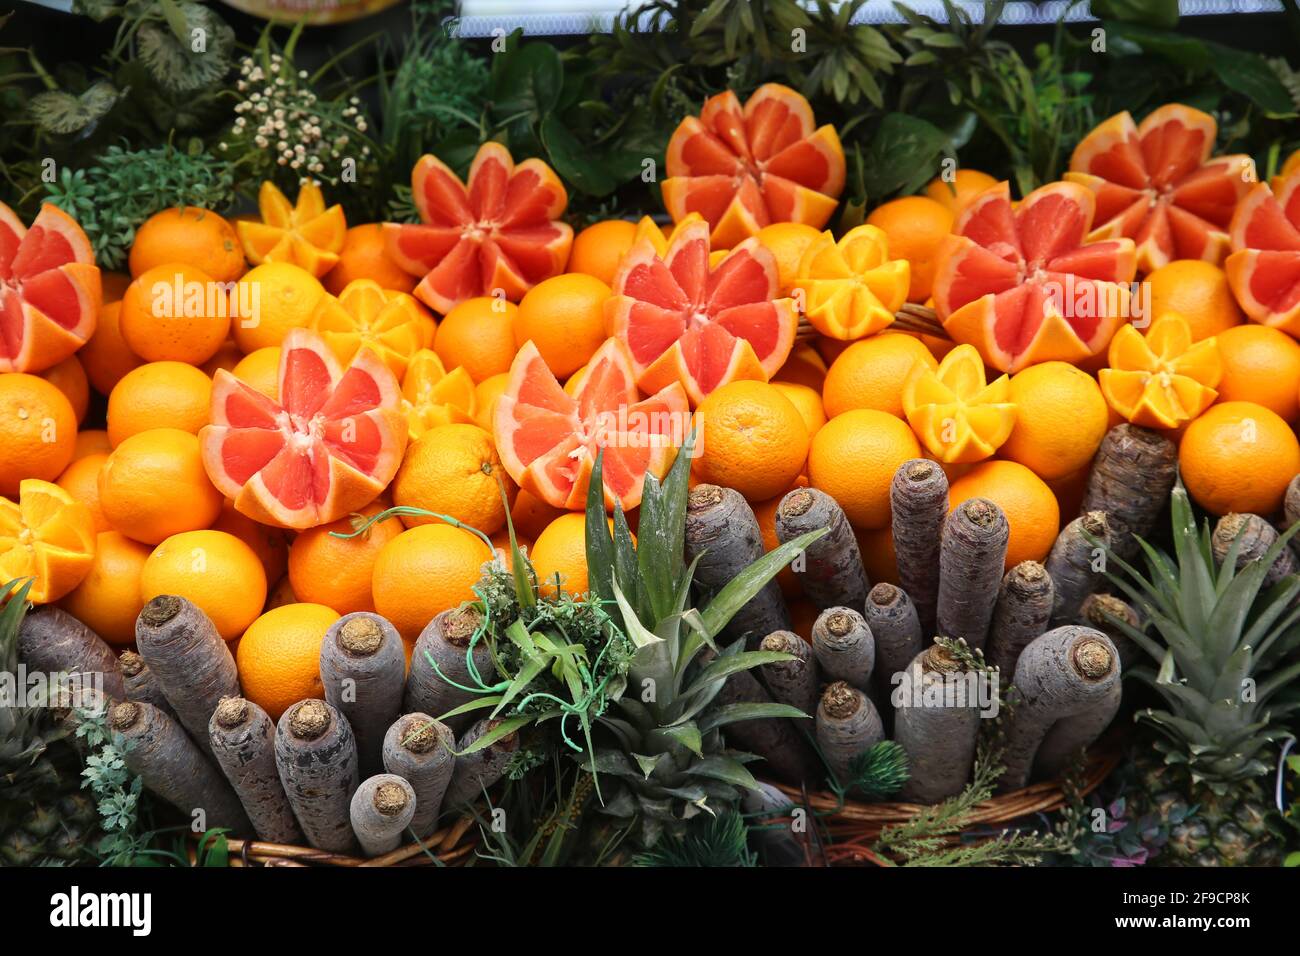 Imagen completa de pomelos, naranjas, zanahorias rojas y ananas en exhibición en el mostrador de una tienda de zumos de frutas Foto de stock